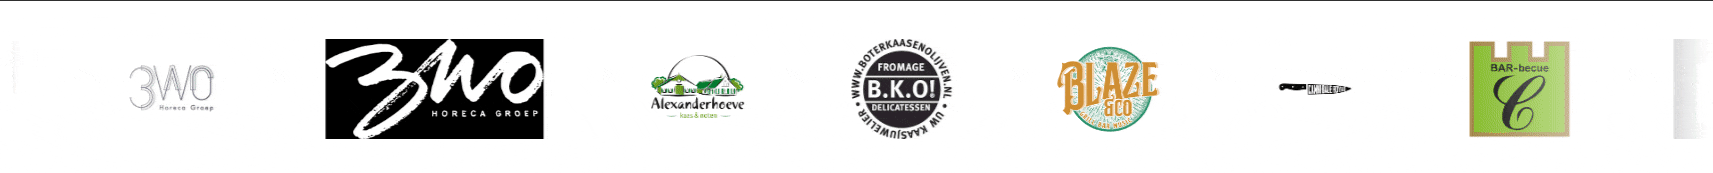 logo slider